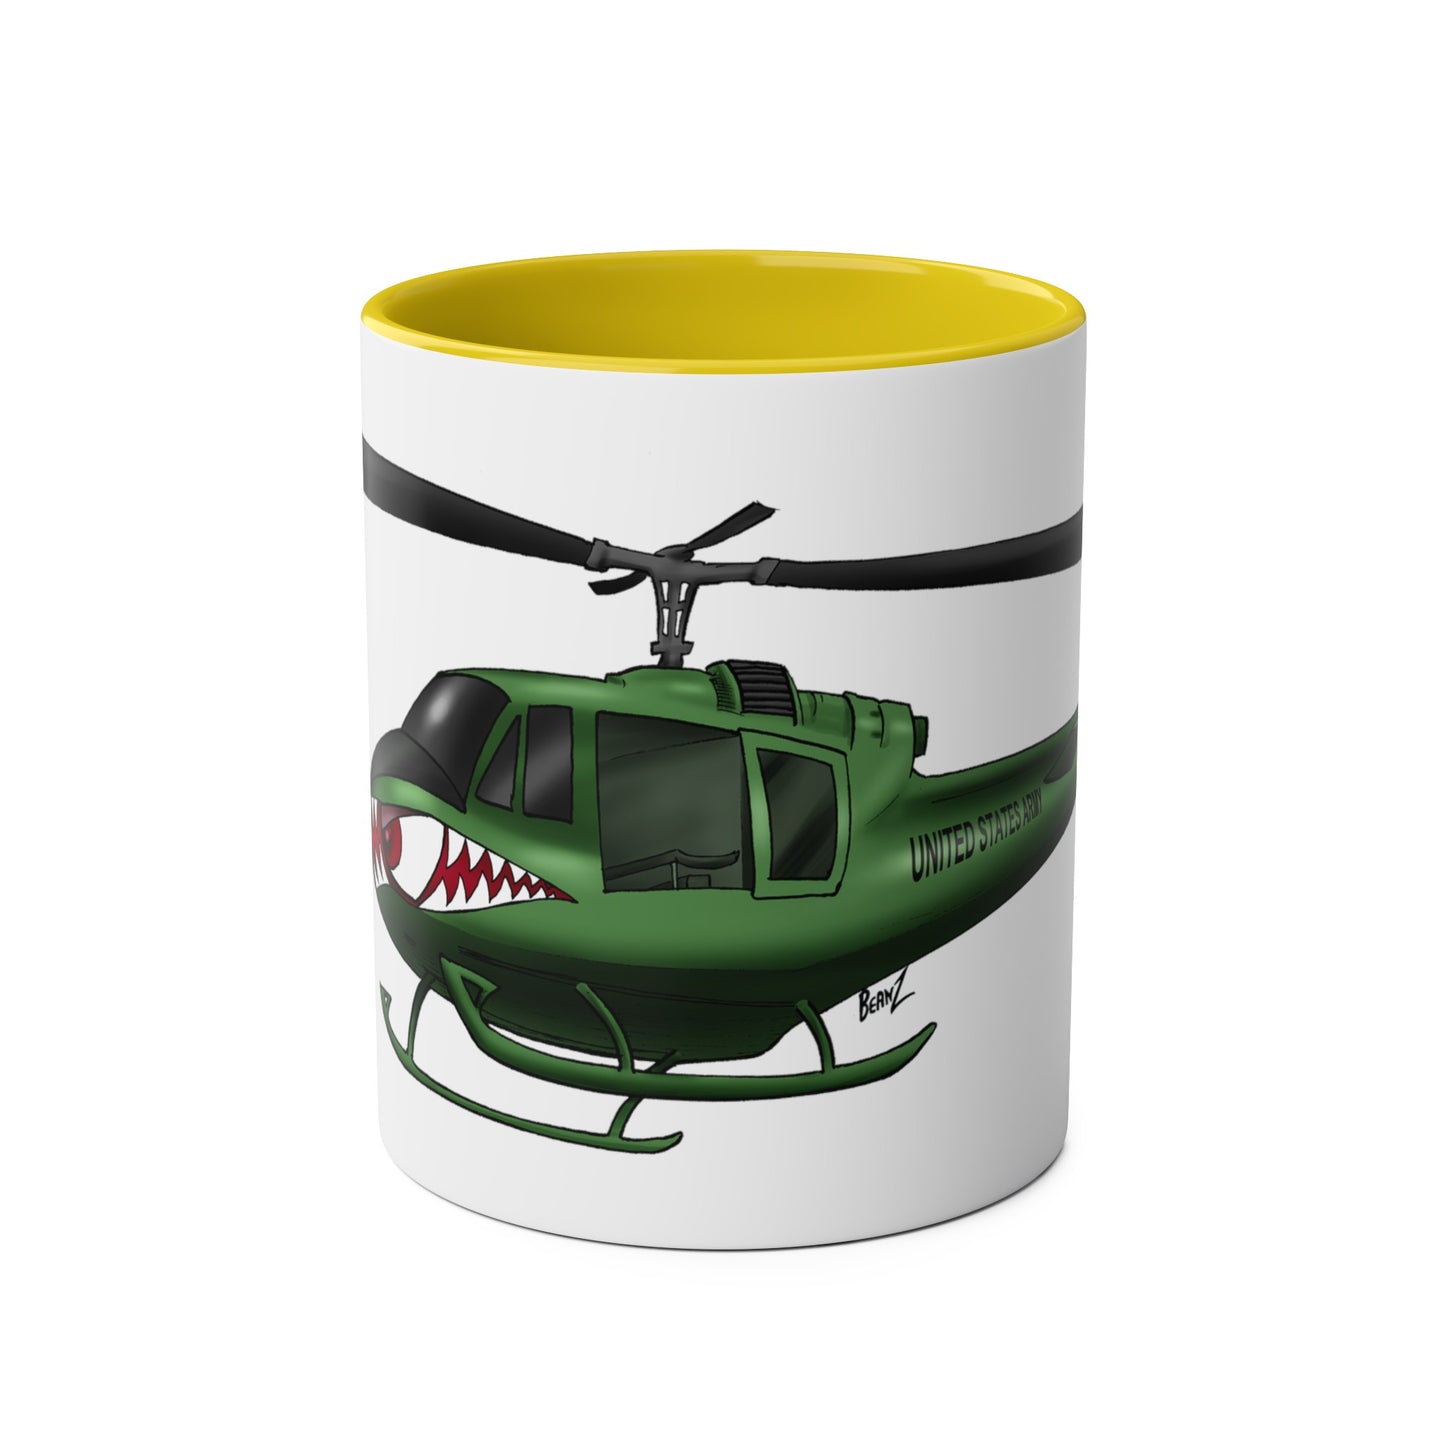 Huey Chopper Two-Tone Coffee Mugs, 11oz